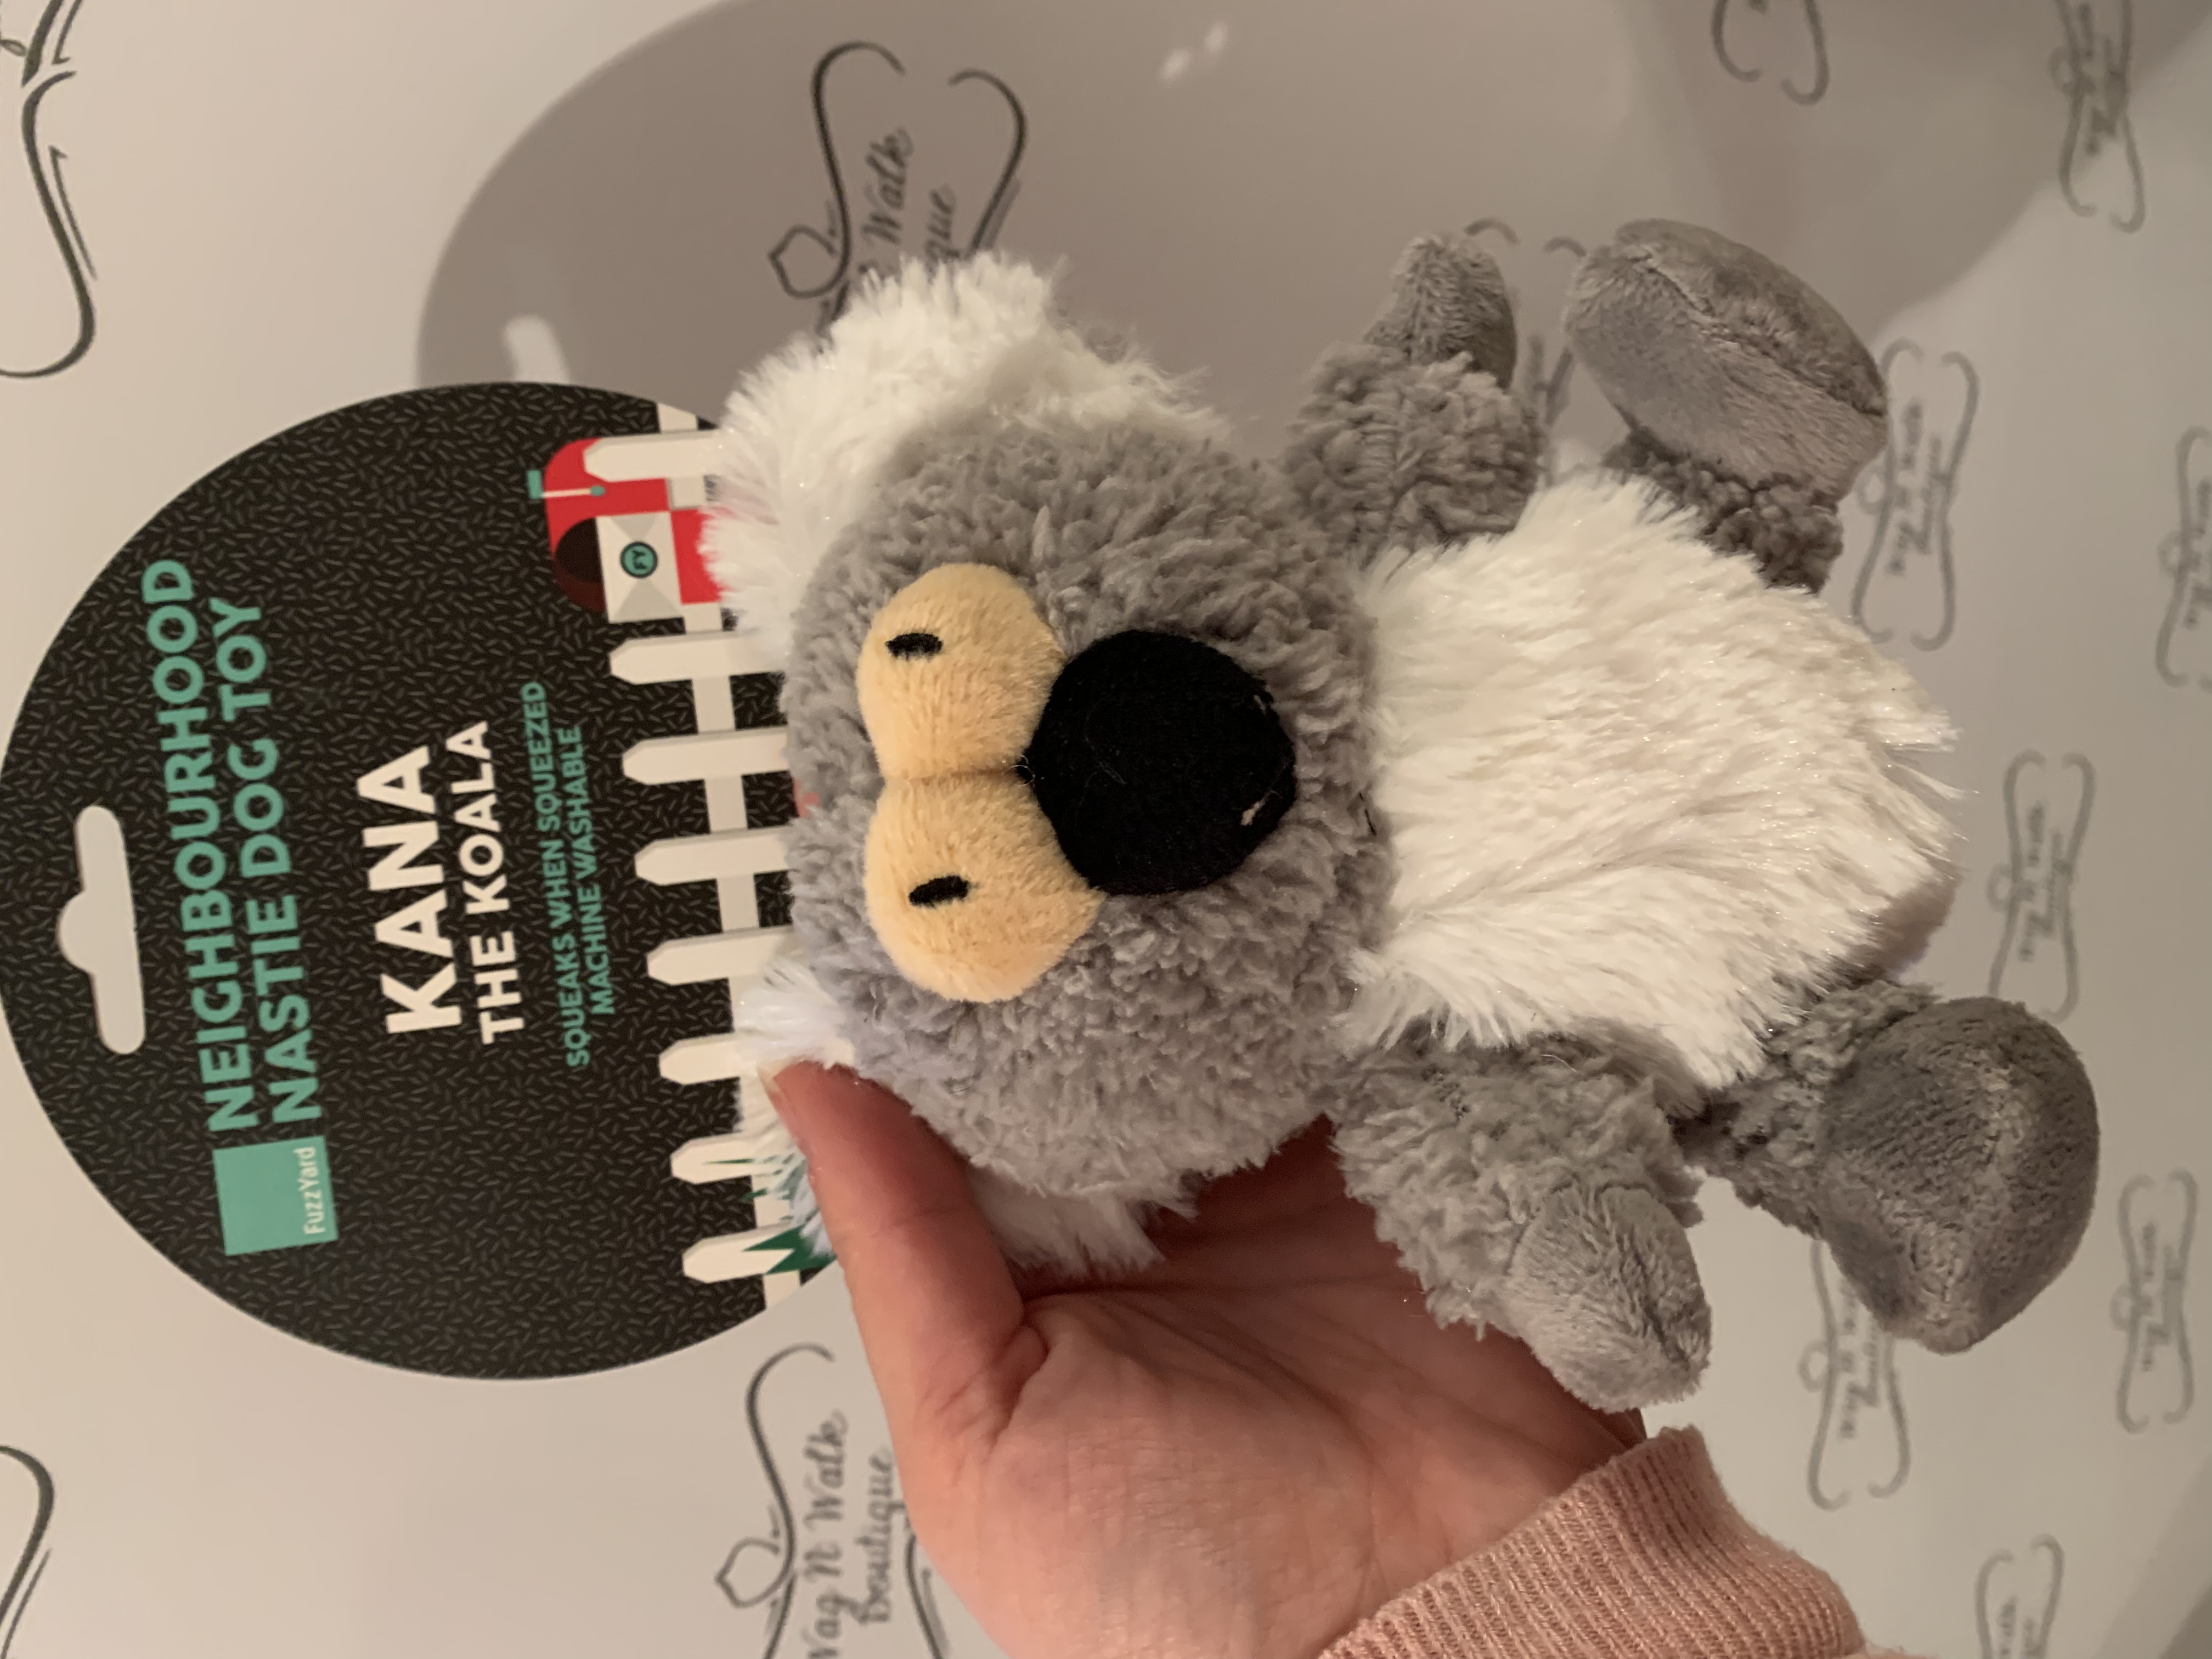 Kana the Koala Toy